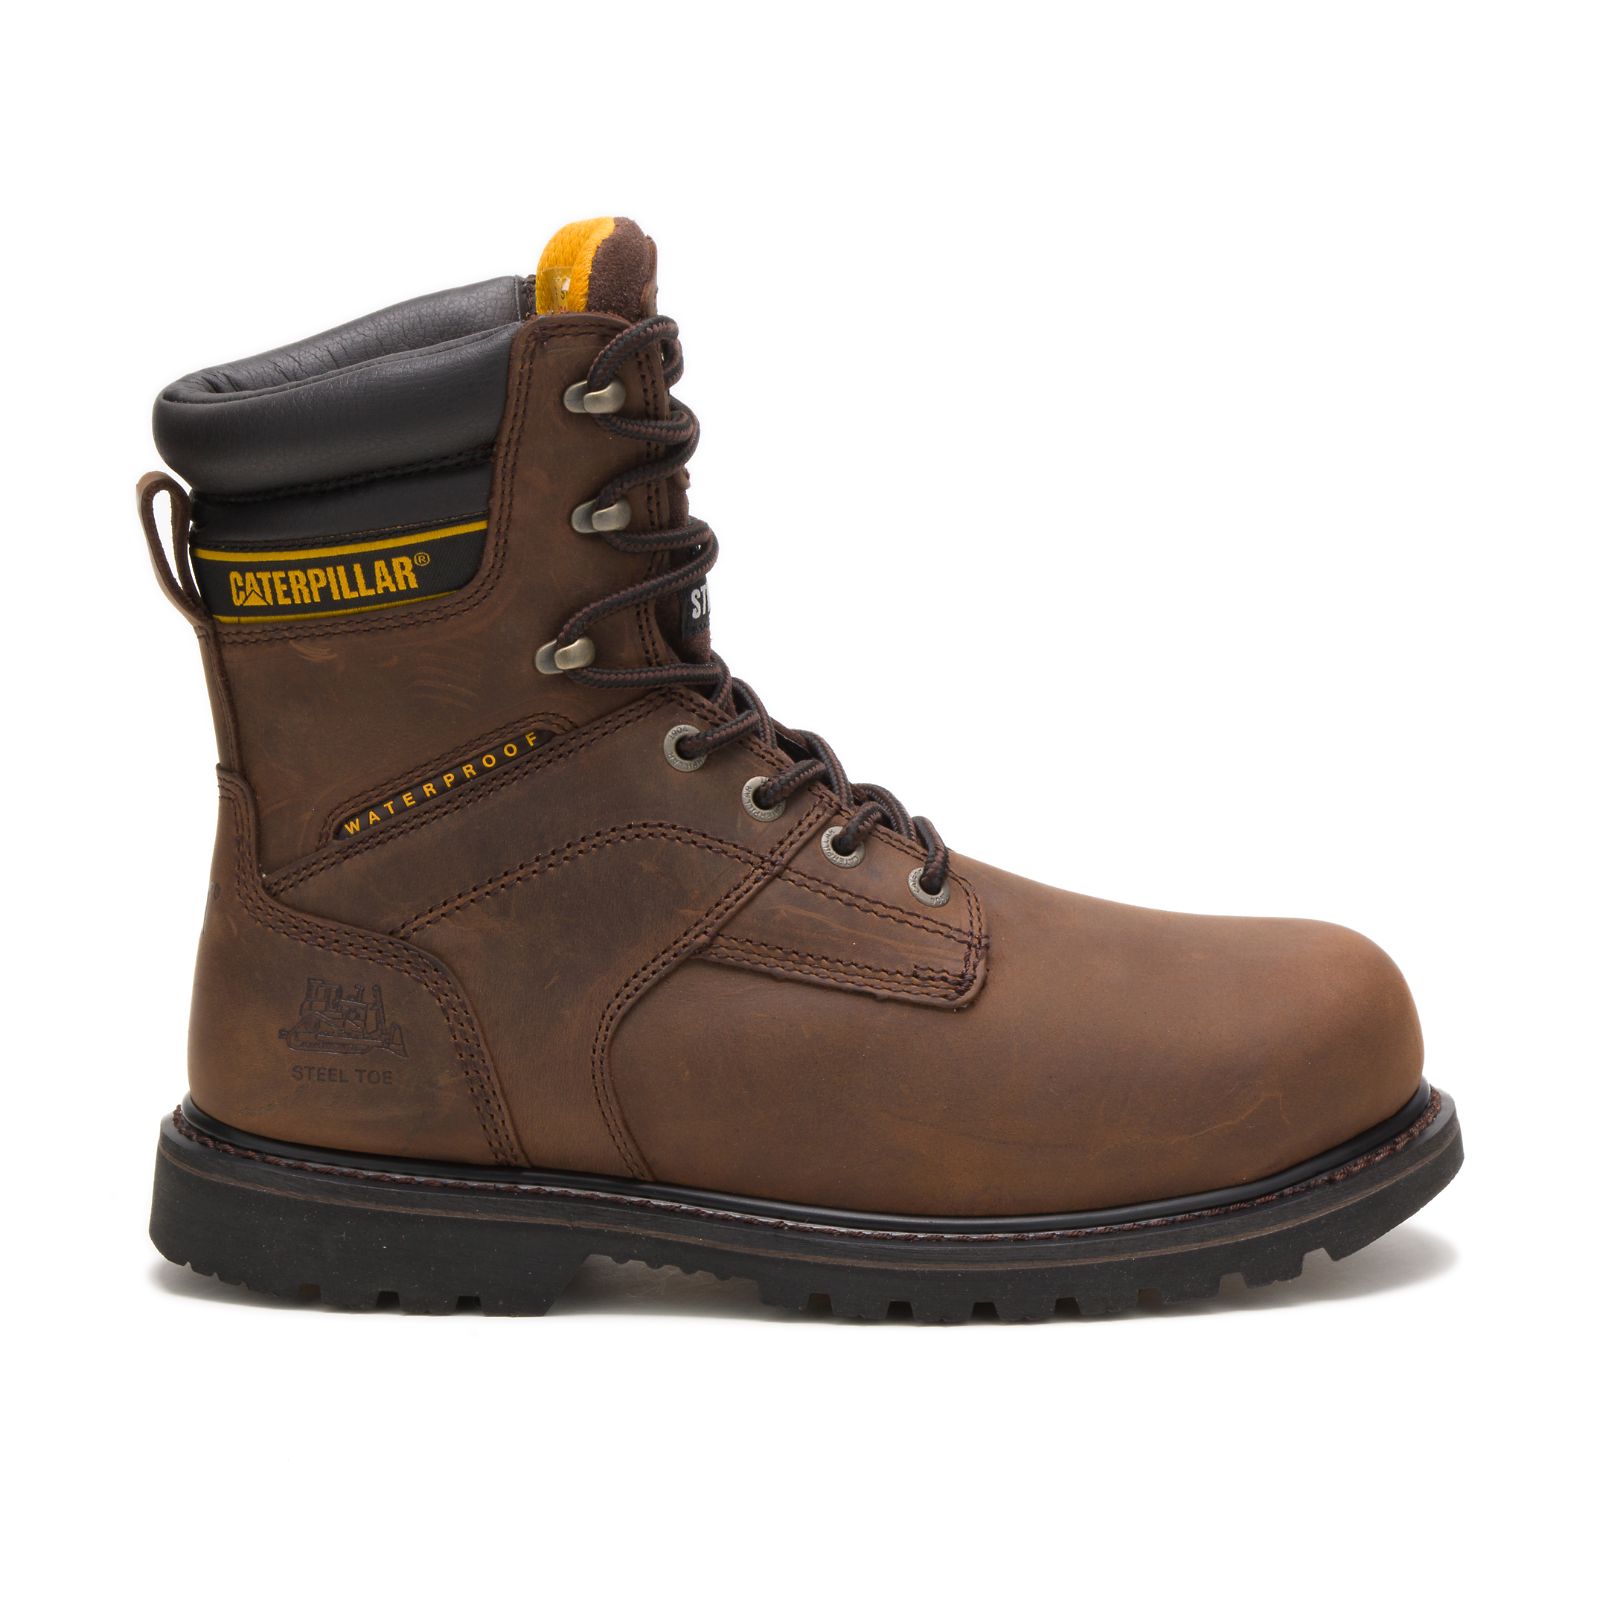 Caterpillar Boots Pakistan - Caterpillar Salvo 8" Waterproof Steel Toe Thinsulate™ Mens Work Boots Dark Brown (539472-ZFT)